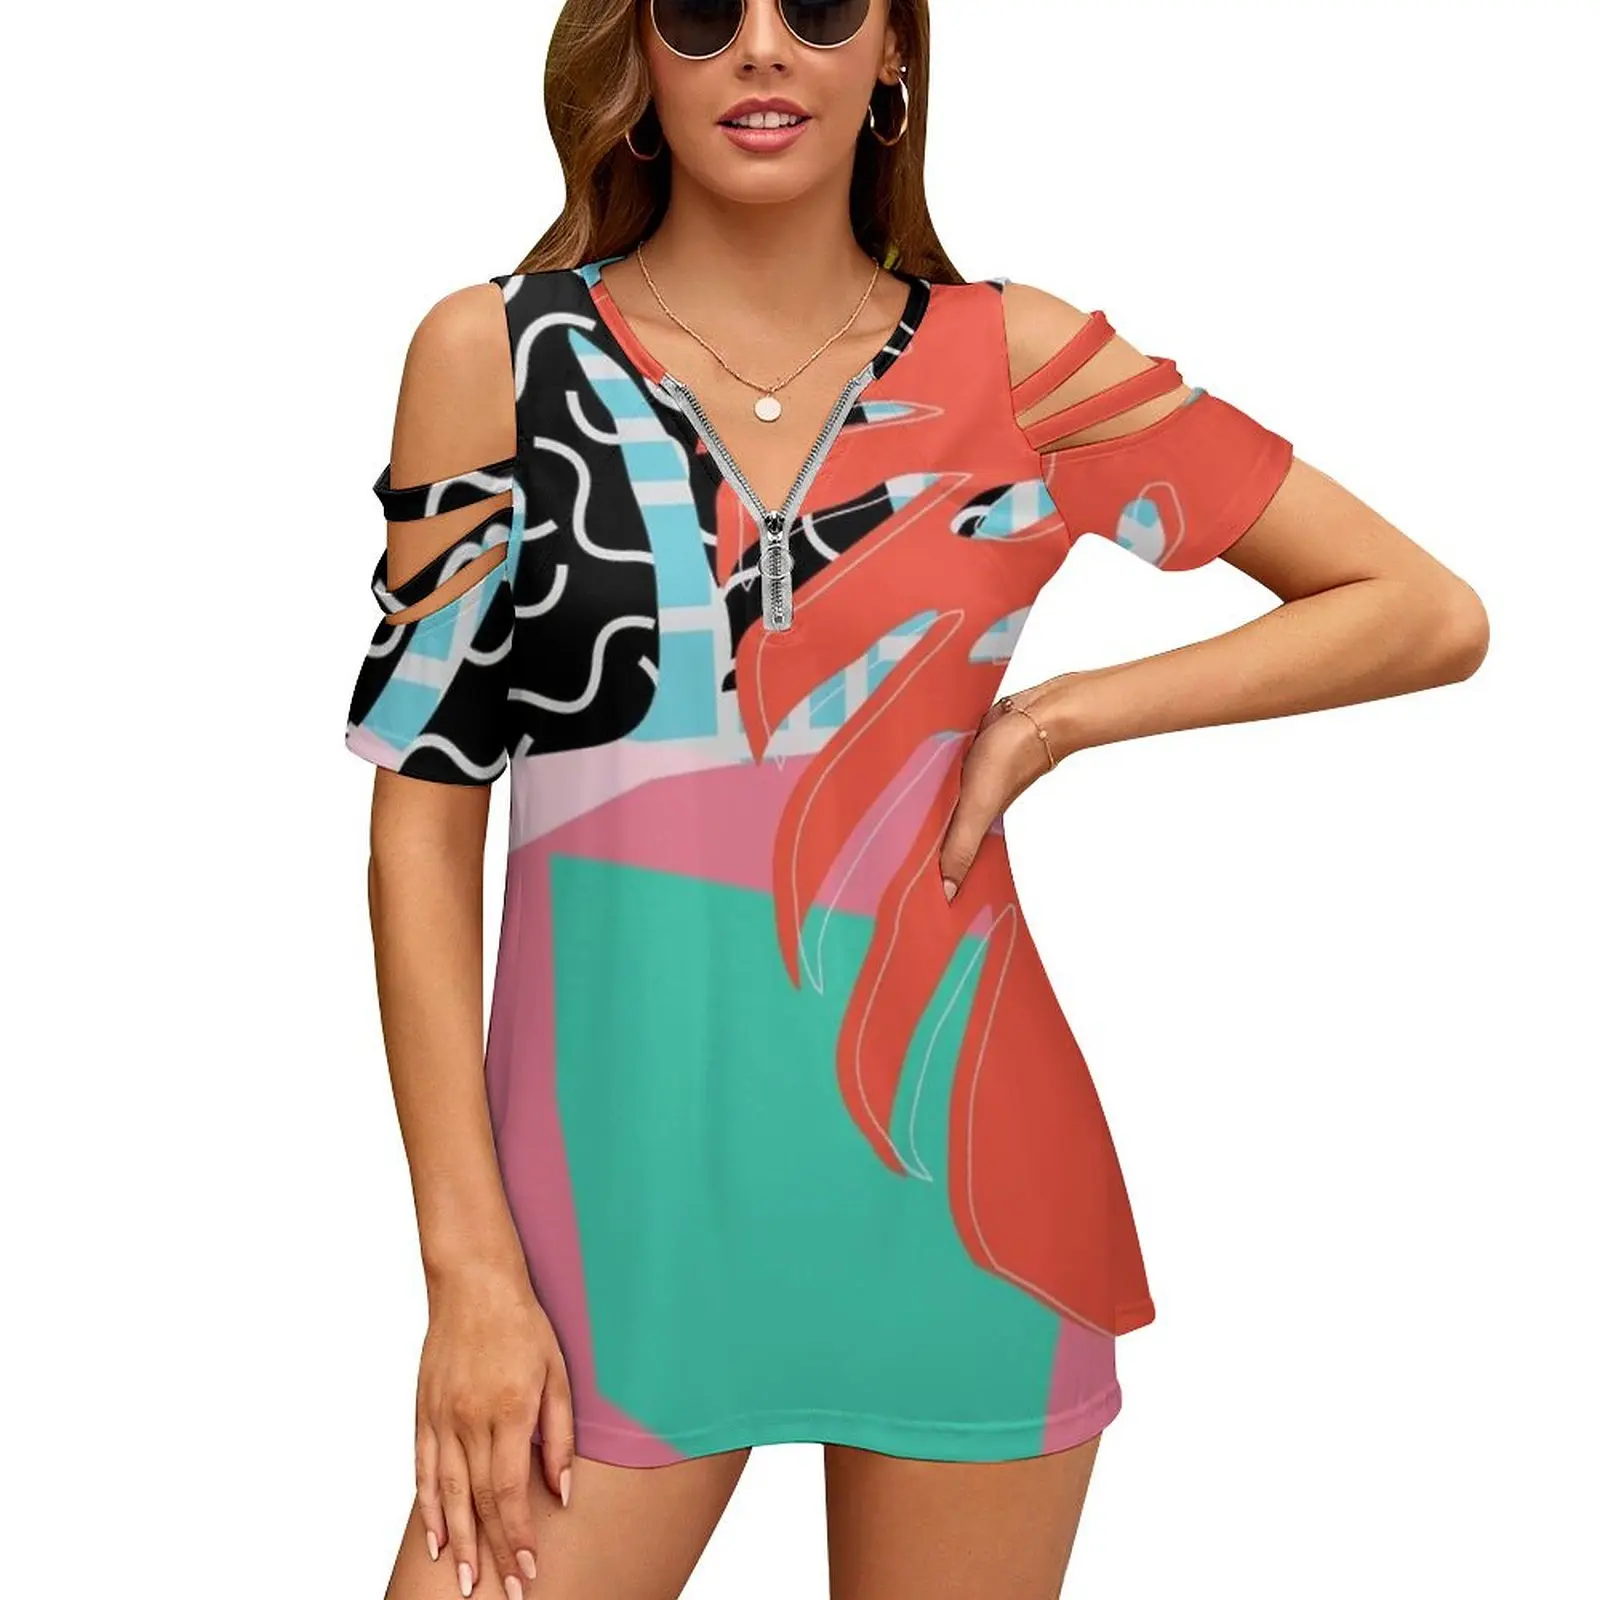 

Мемфис ладонь/абстрактный узор Мемфис тропический женская футболка Новая модная печатная молния V-образный вырез